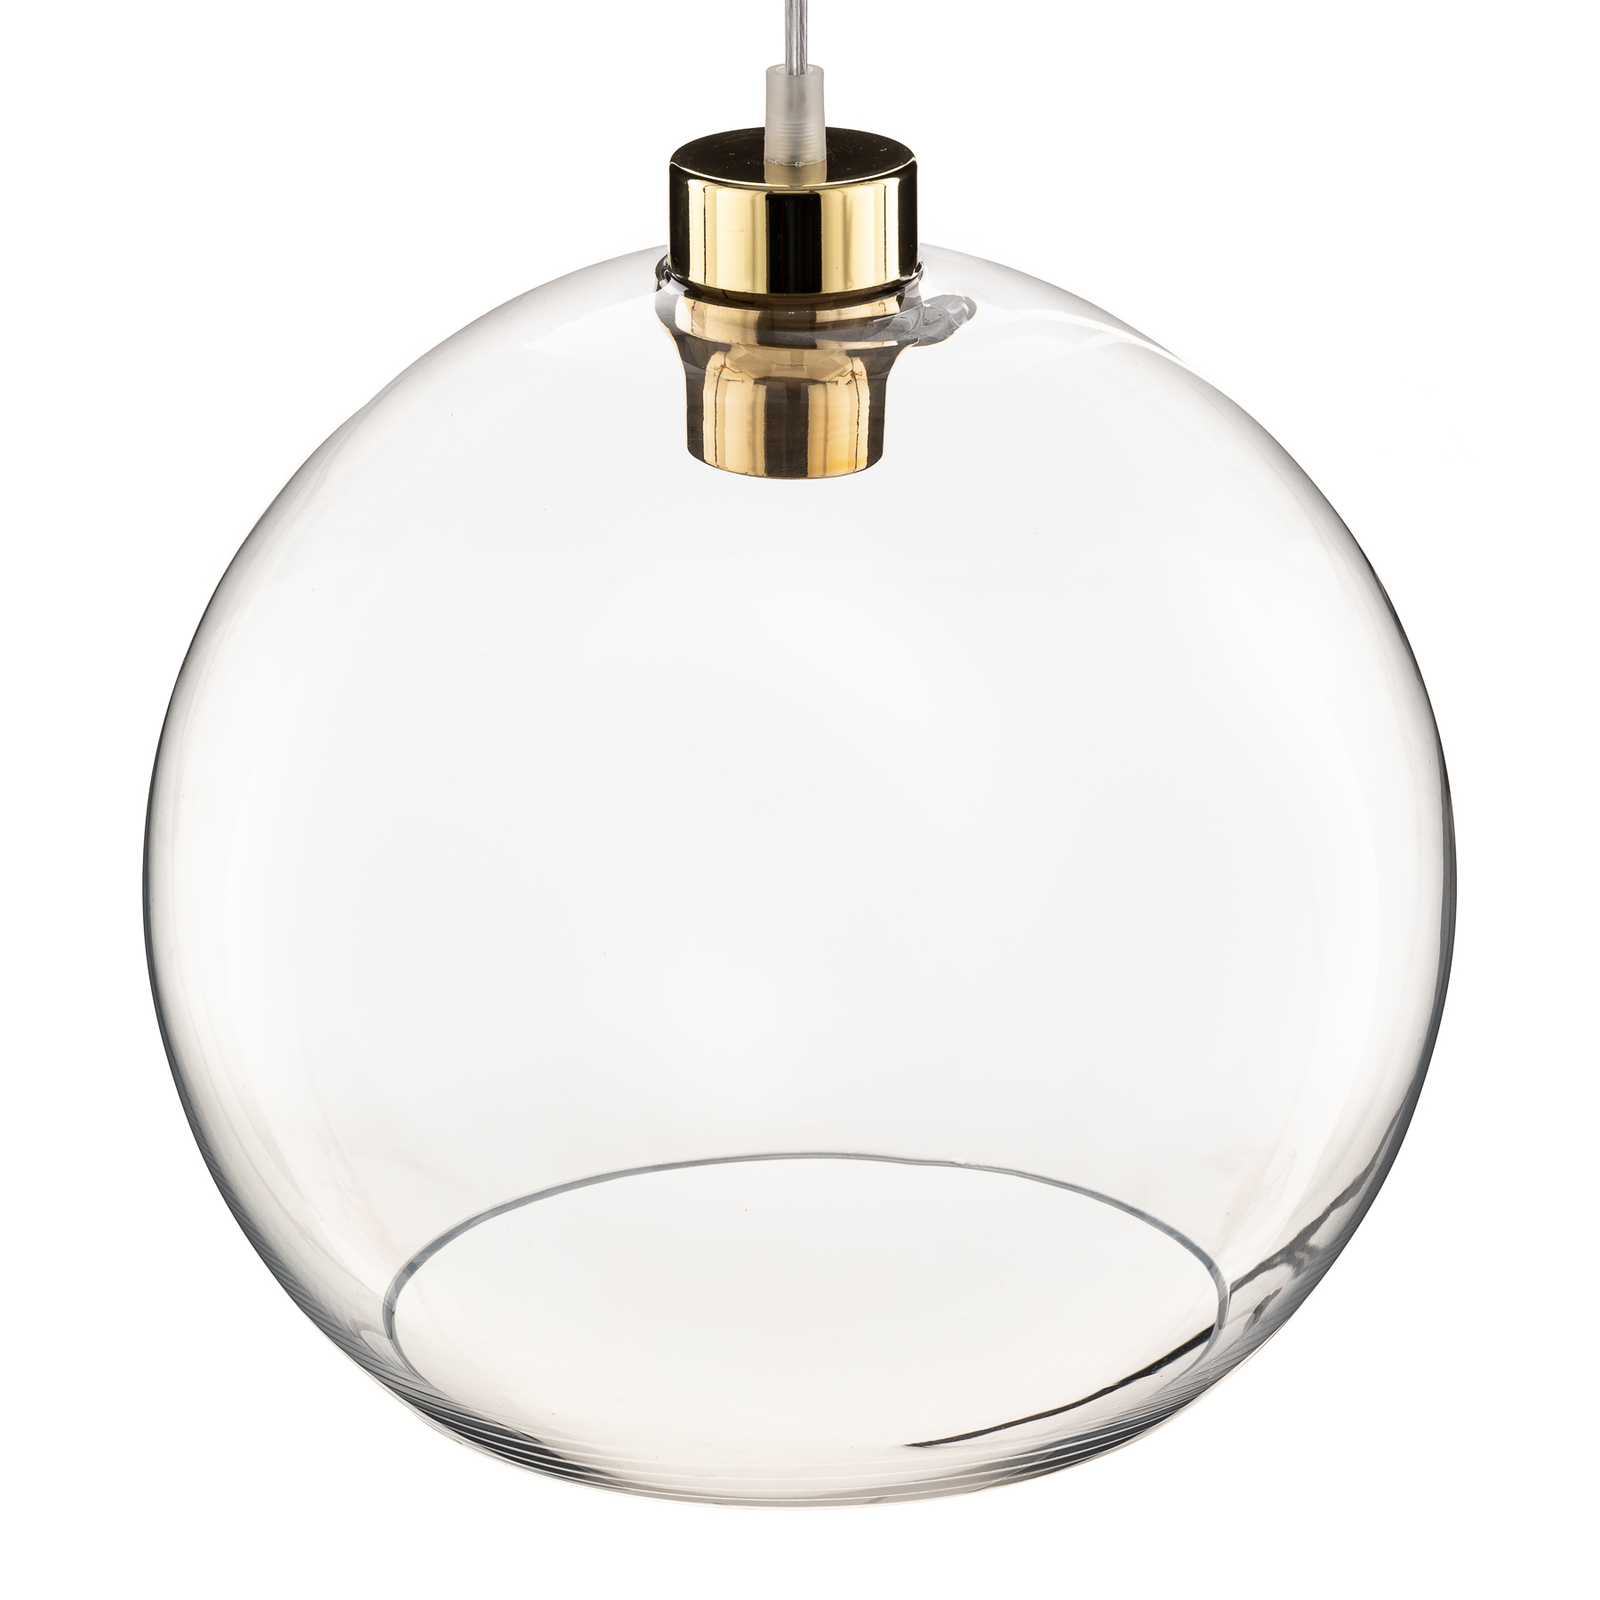 Cubus pendant light, 1-bulb, white